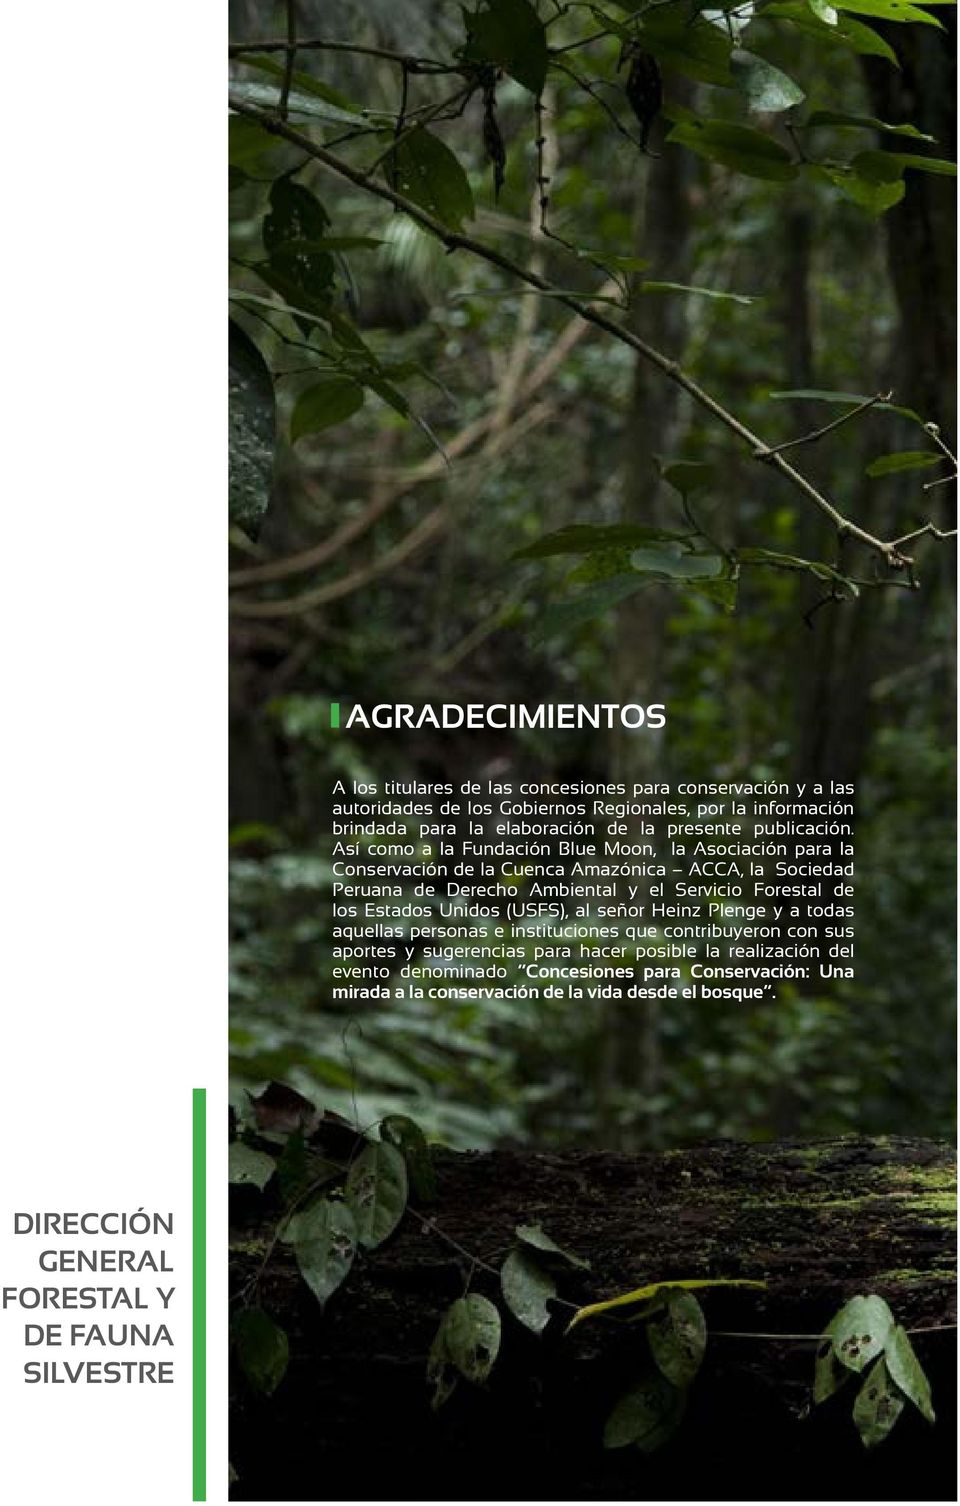 Así como a la Fundación Blue Moon, la Asociación para la Conservación de la Cuenca Amazónica ACCA, la Sociedad Peruana de Derecho Ambiental y el Servicio Forestal de los